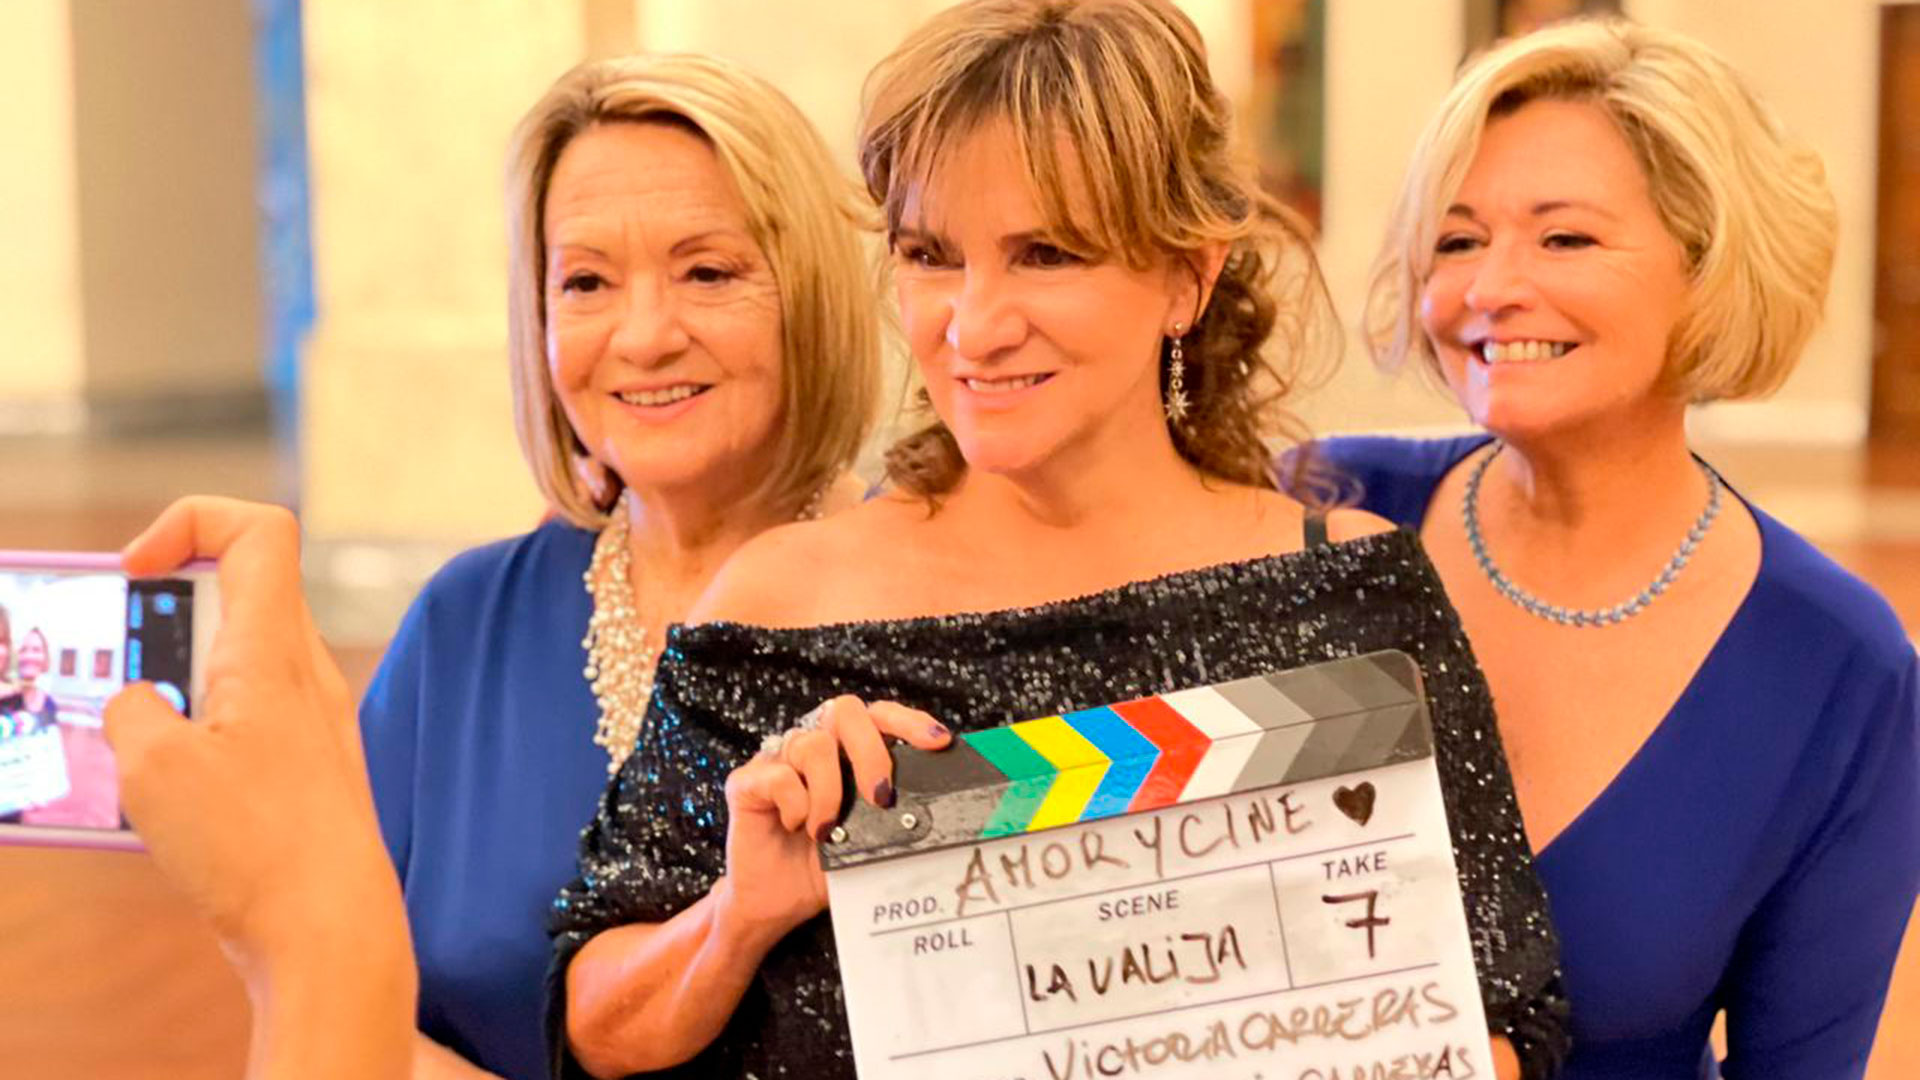 "Hijas de la comedia" es el segundo documental de Victoria Carreras